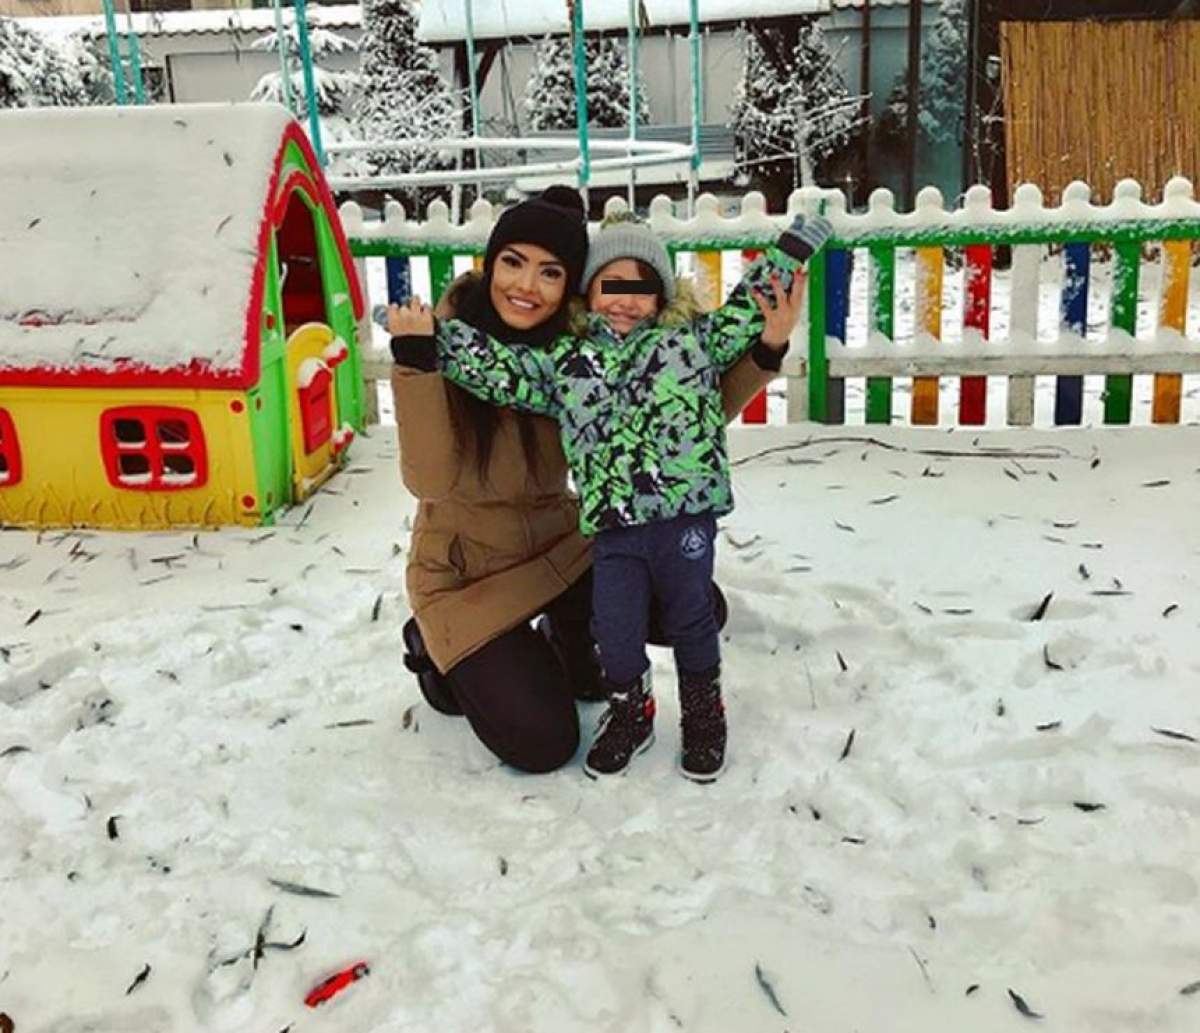 VIDEO / Andreea Mantea şi băieţelul ei s-au întors în România. "Acasă"